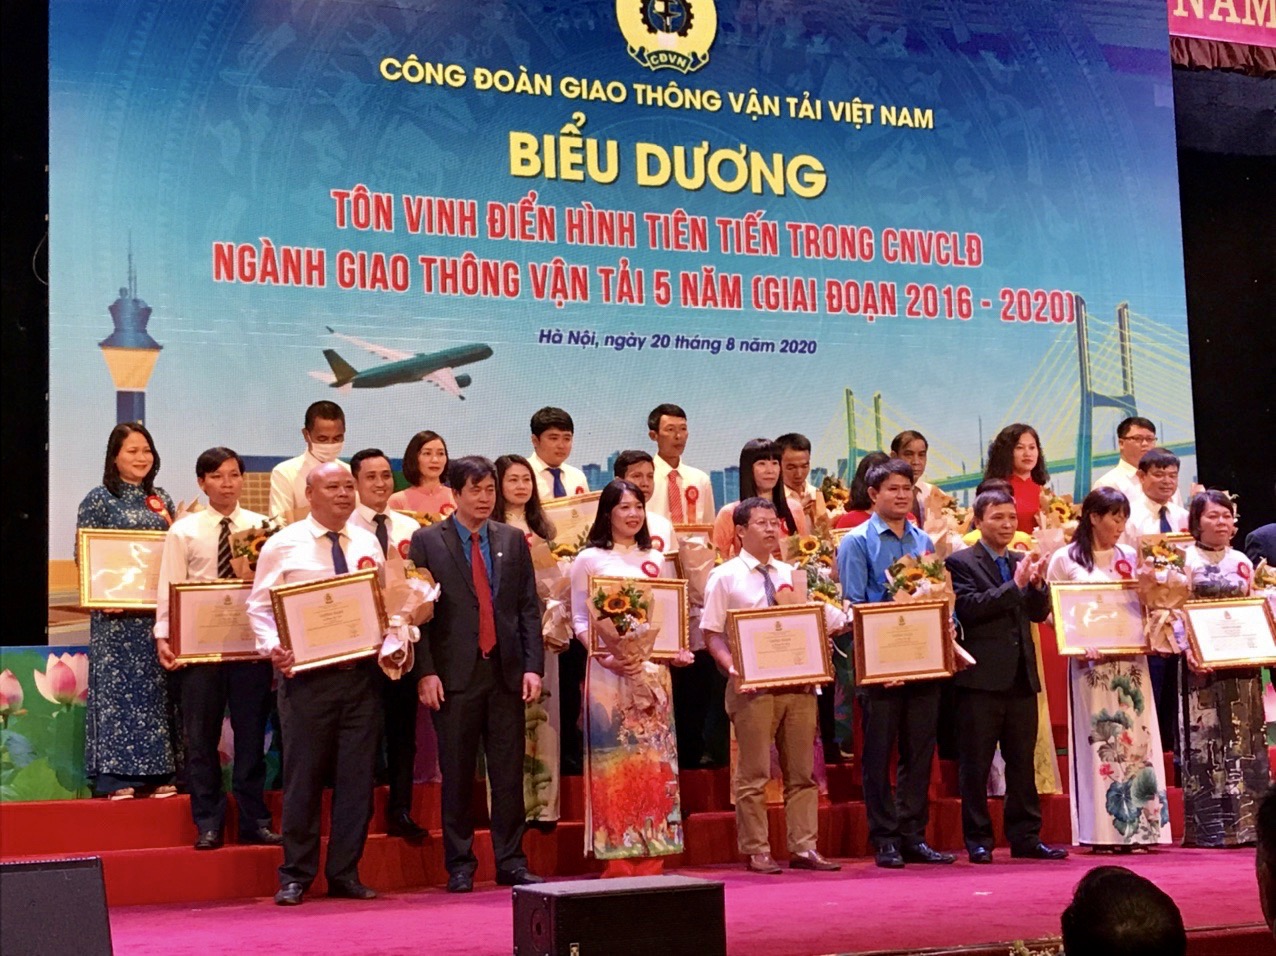 Công đoàn Giao thông vận tải Việt Nam tổ chức tôn vinh điển hình tiên tiến ngành Giao thông vận tải giai đoạn 2016-2020